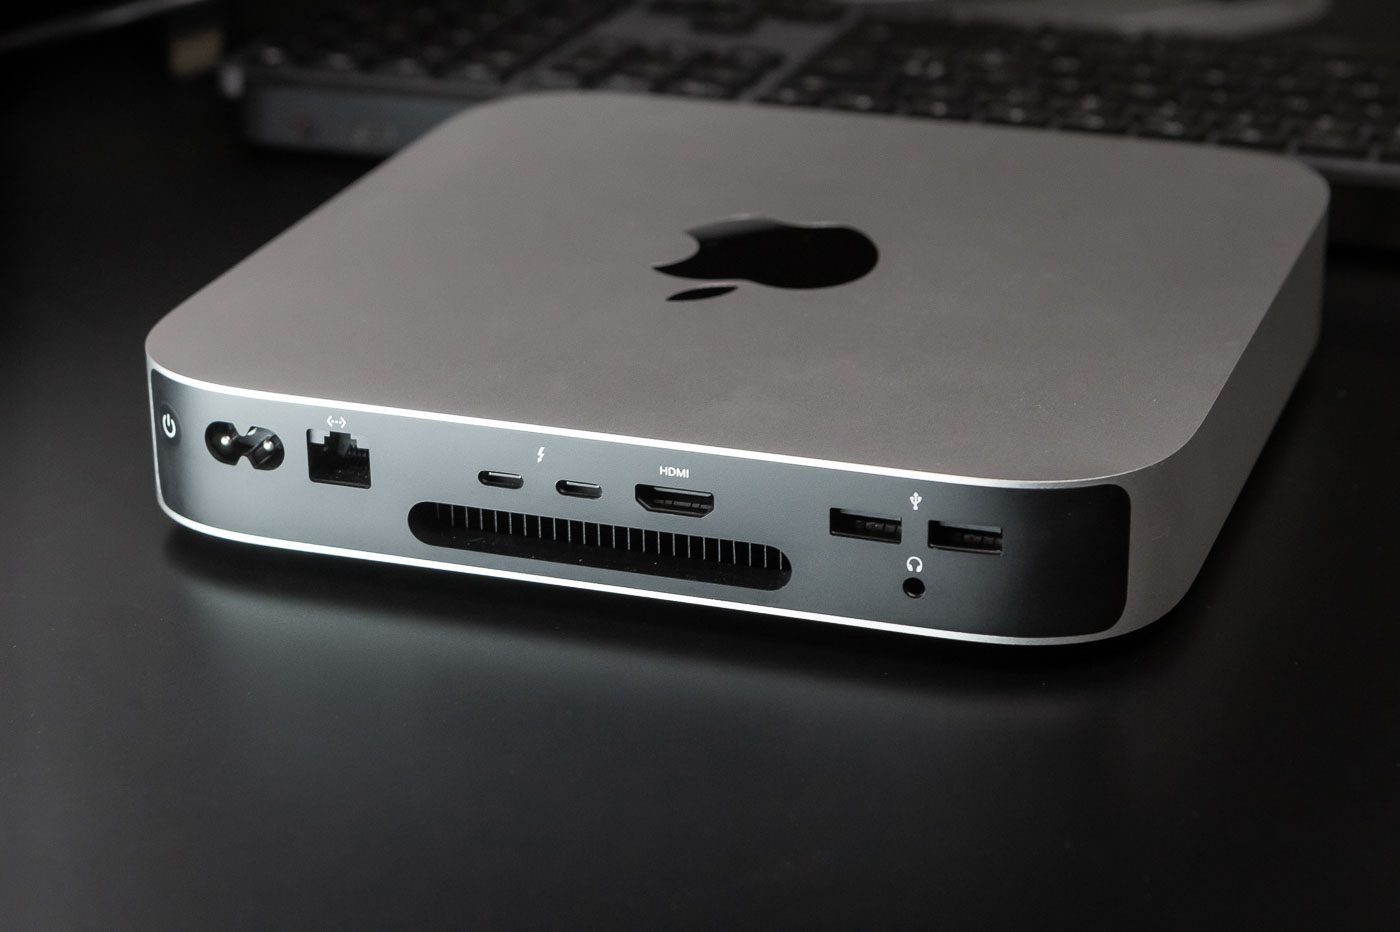 Le Mac mini M2 offre une connectique plutôt complète bien que moins riche que sur les modèles équipés d'un M2 Pro.